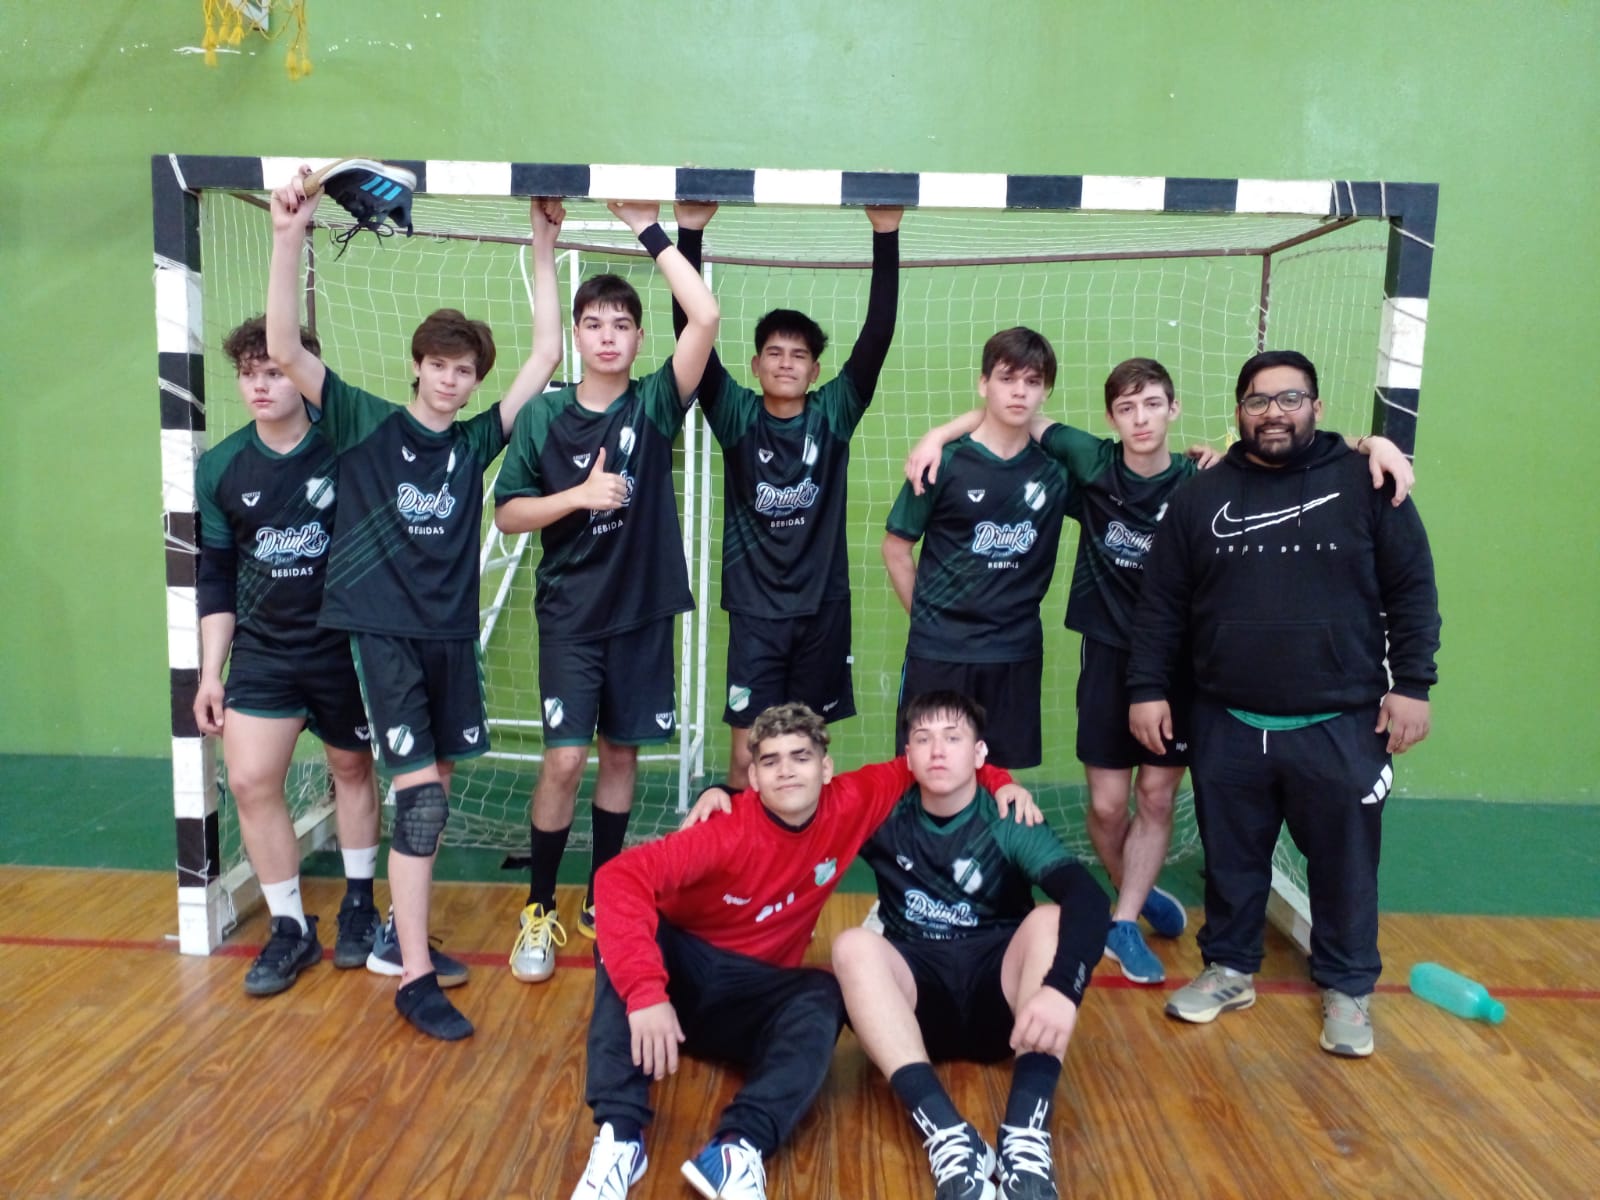 DEPORTE / El vóley y handball de Guernica entre los 4 mejores de nuestra región